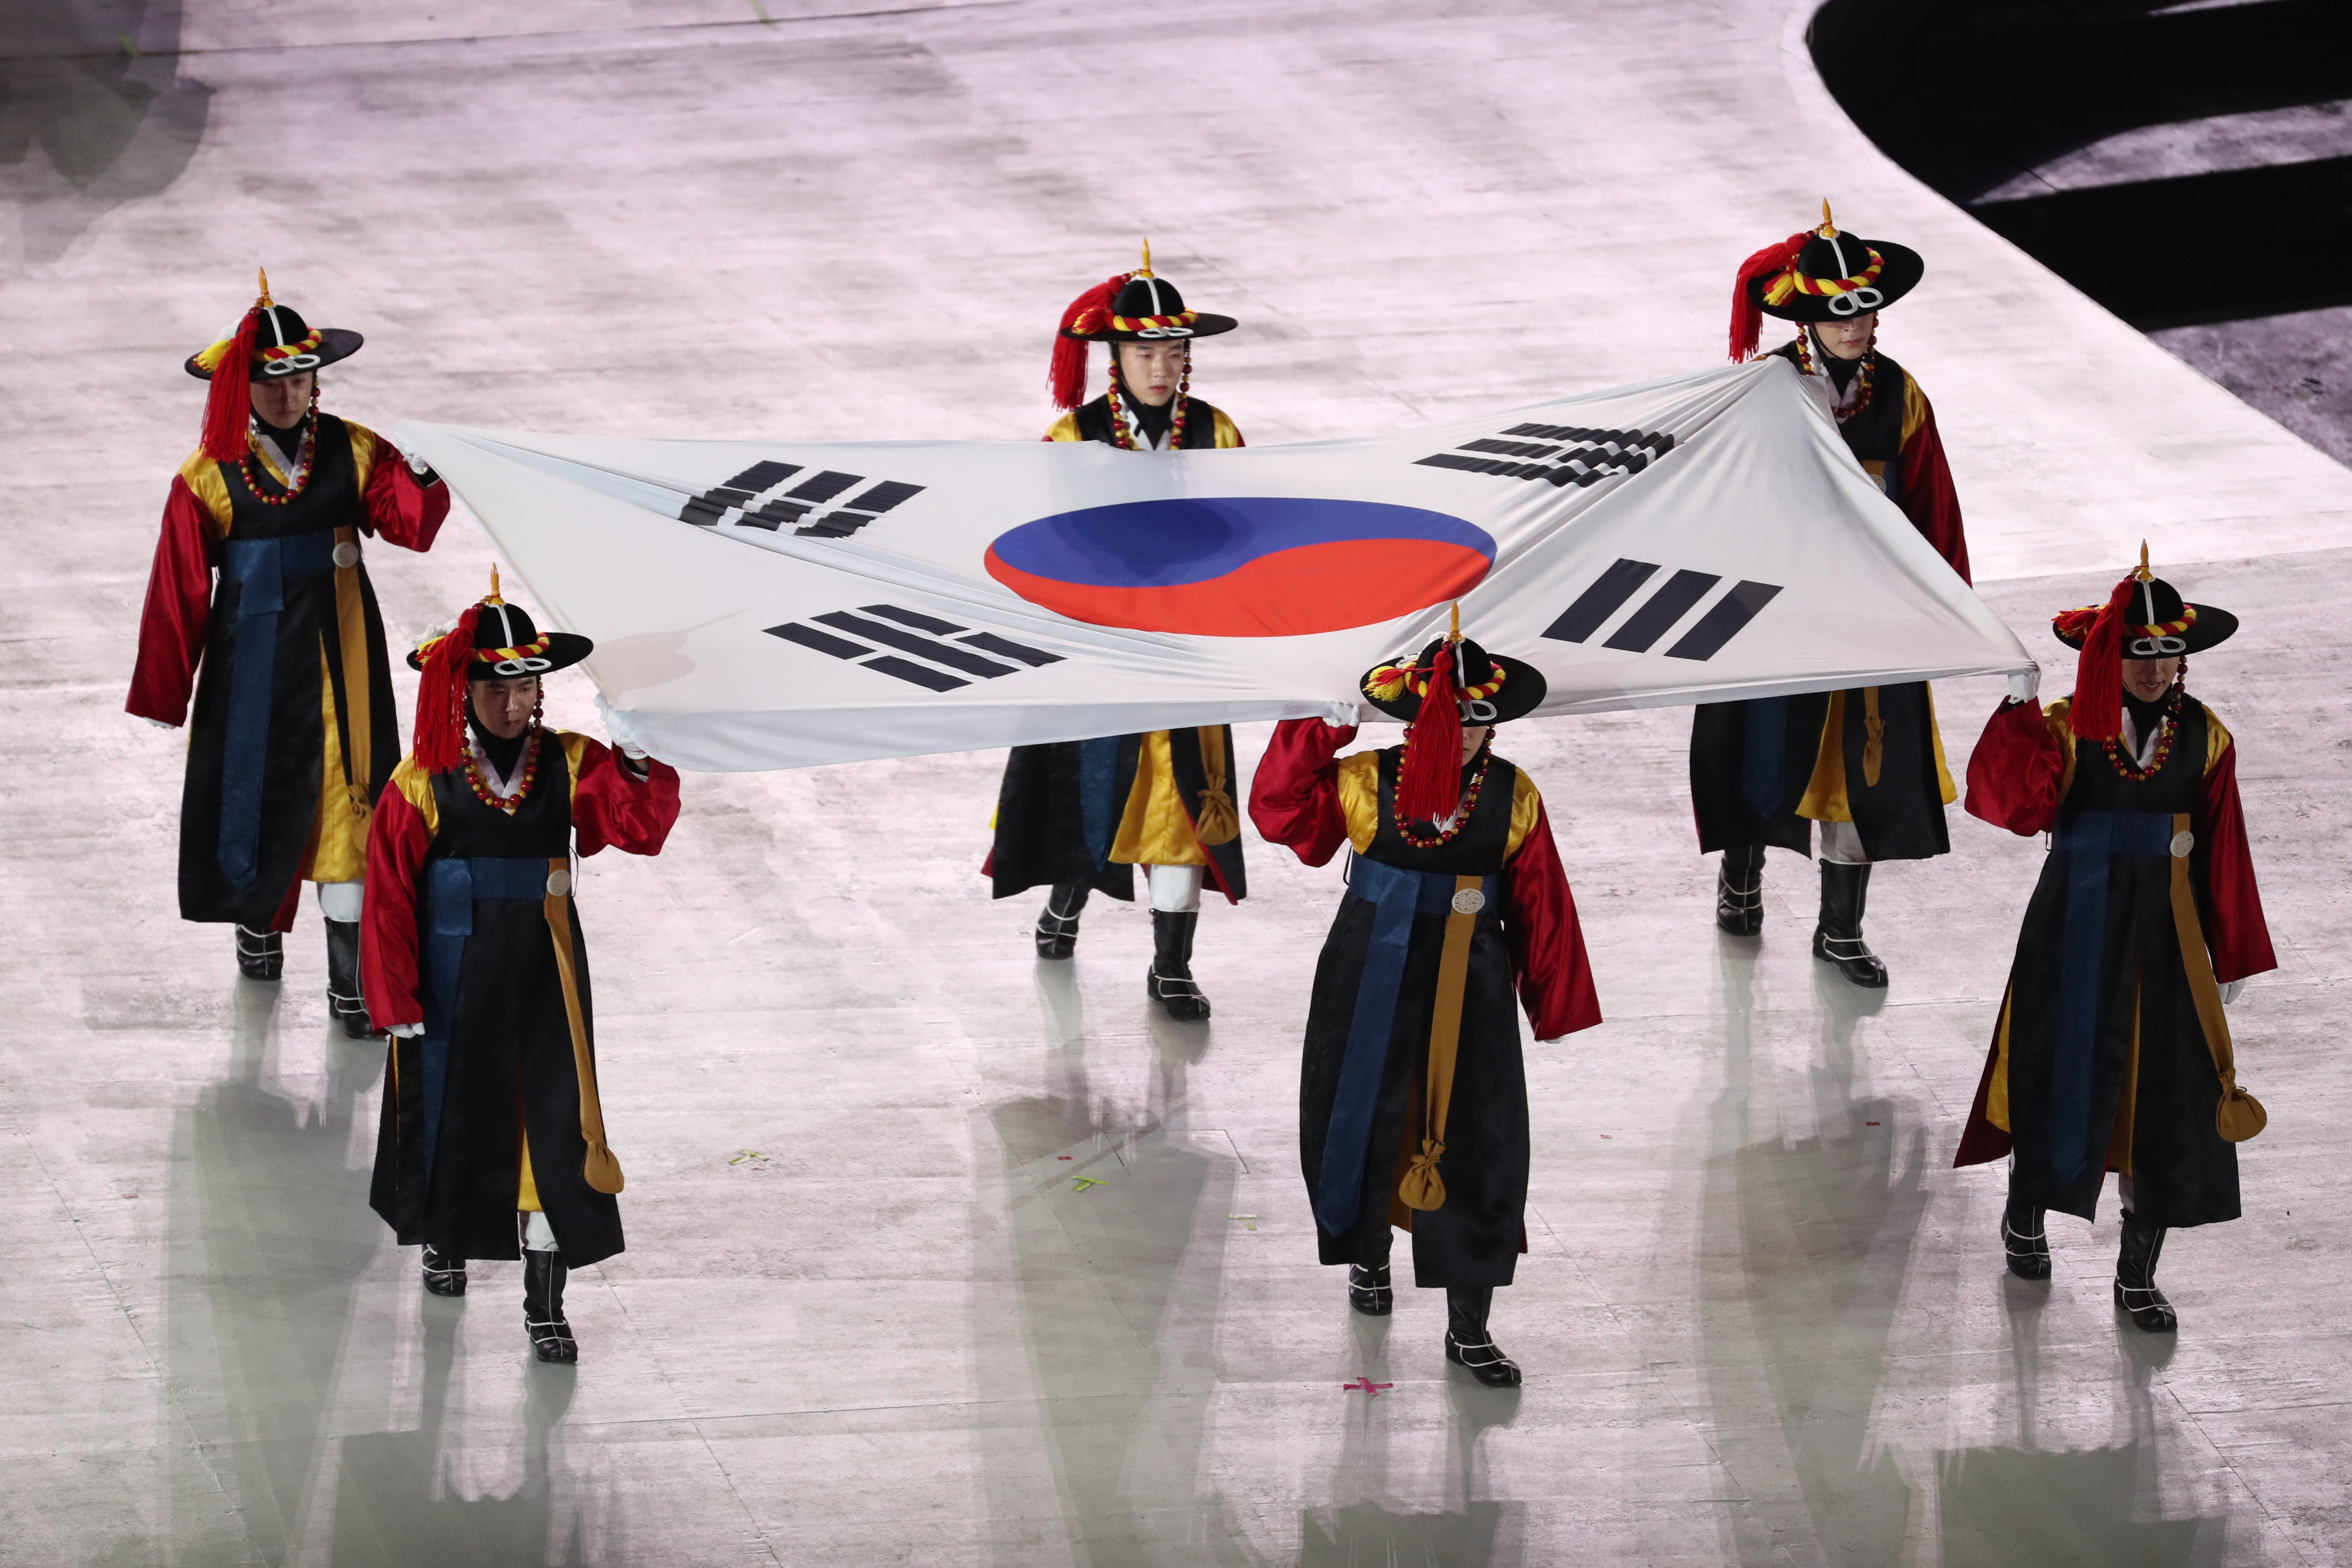 俄罗斯奥运队旗帜图片